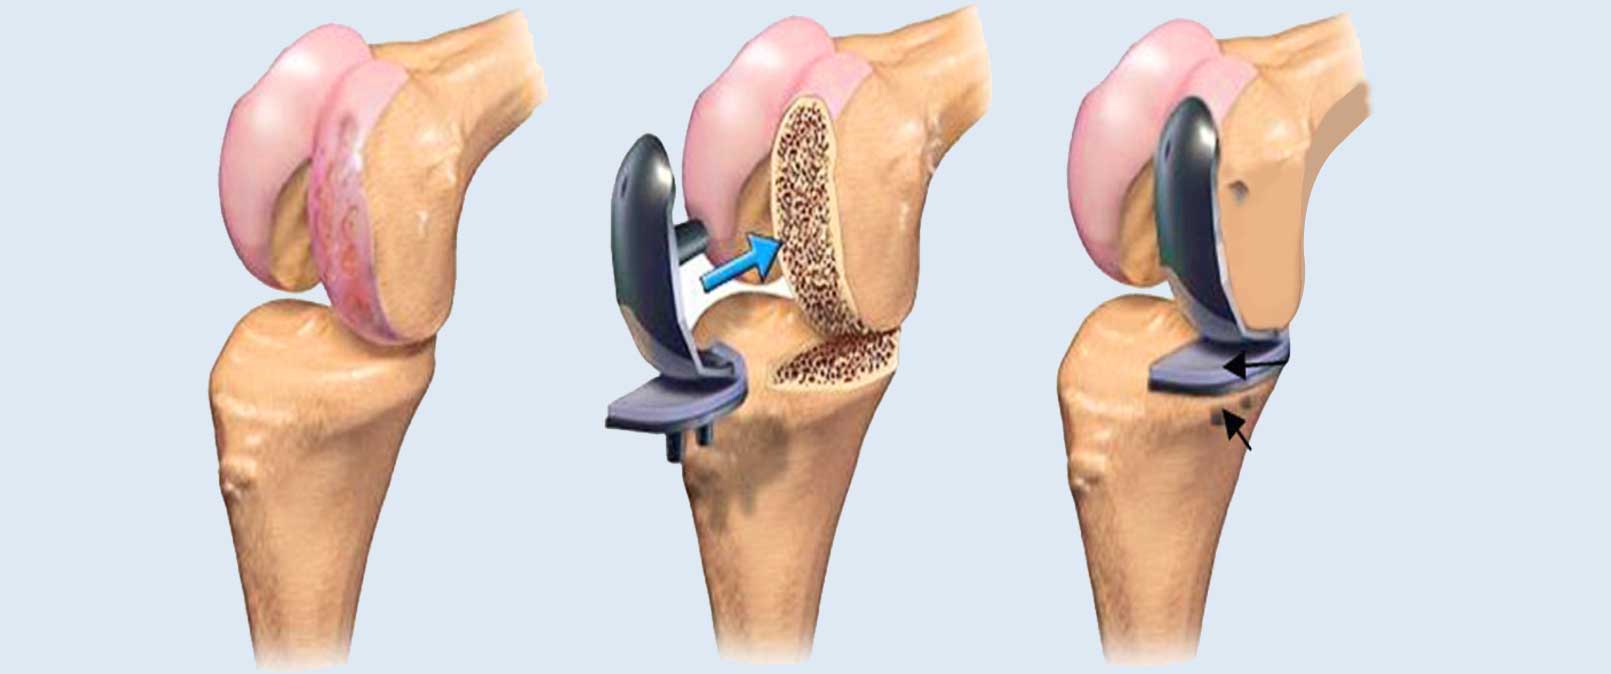 ما هي عملية تغيير مفصل الركبة؟